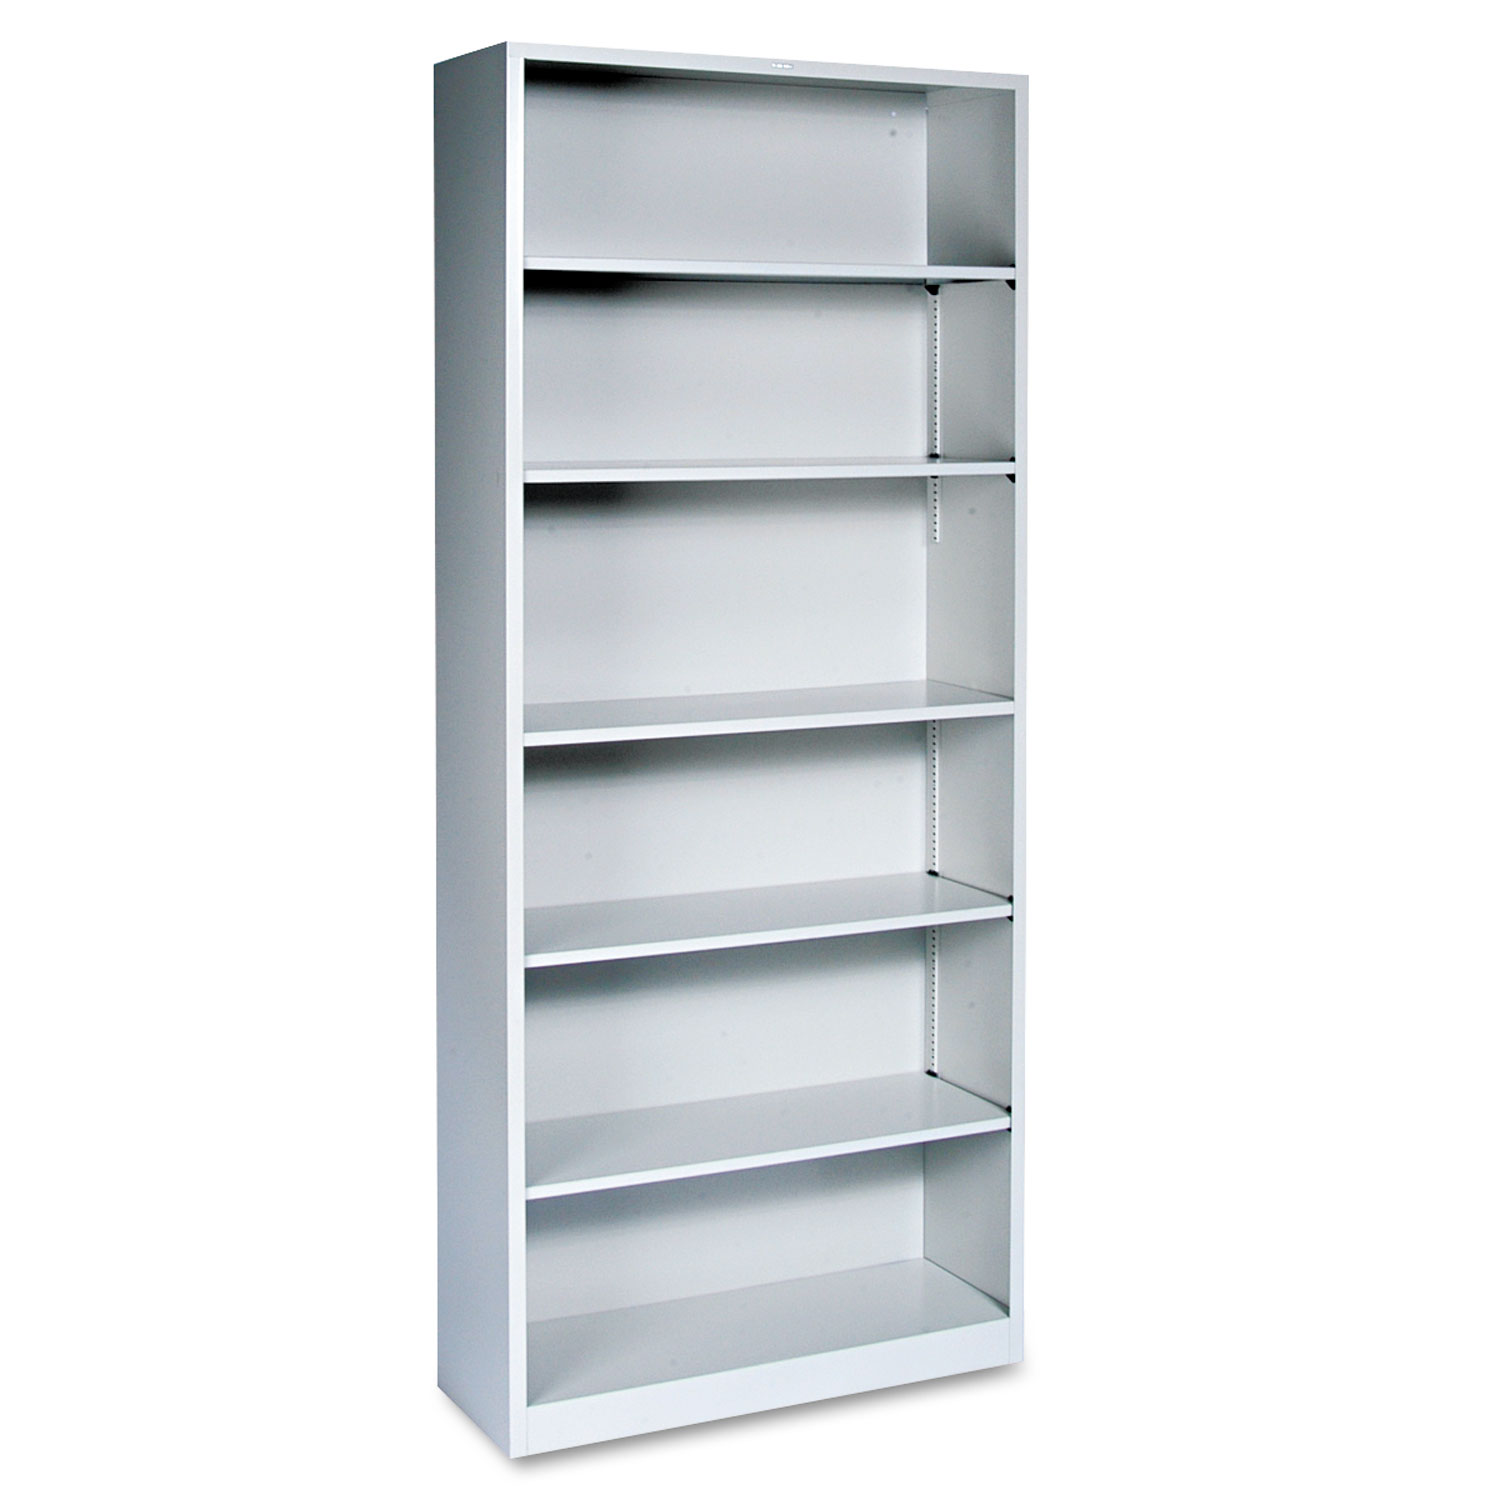  HON HS82ABC.Q Metal Bookcase, Six-Shelf, 34-1/2w x 12-5/8d x 81-1/8h, Light Gray (HONS82ABCQ) 